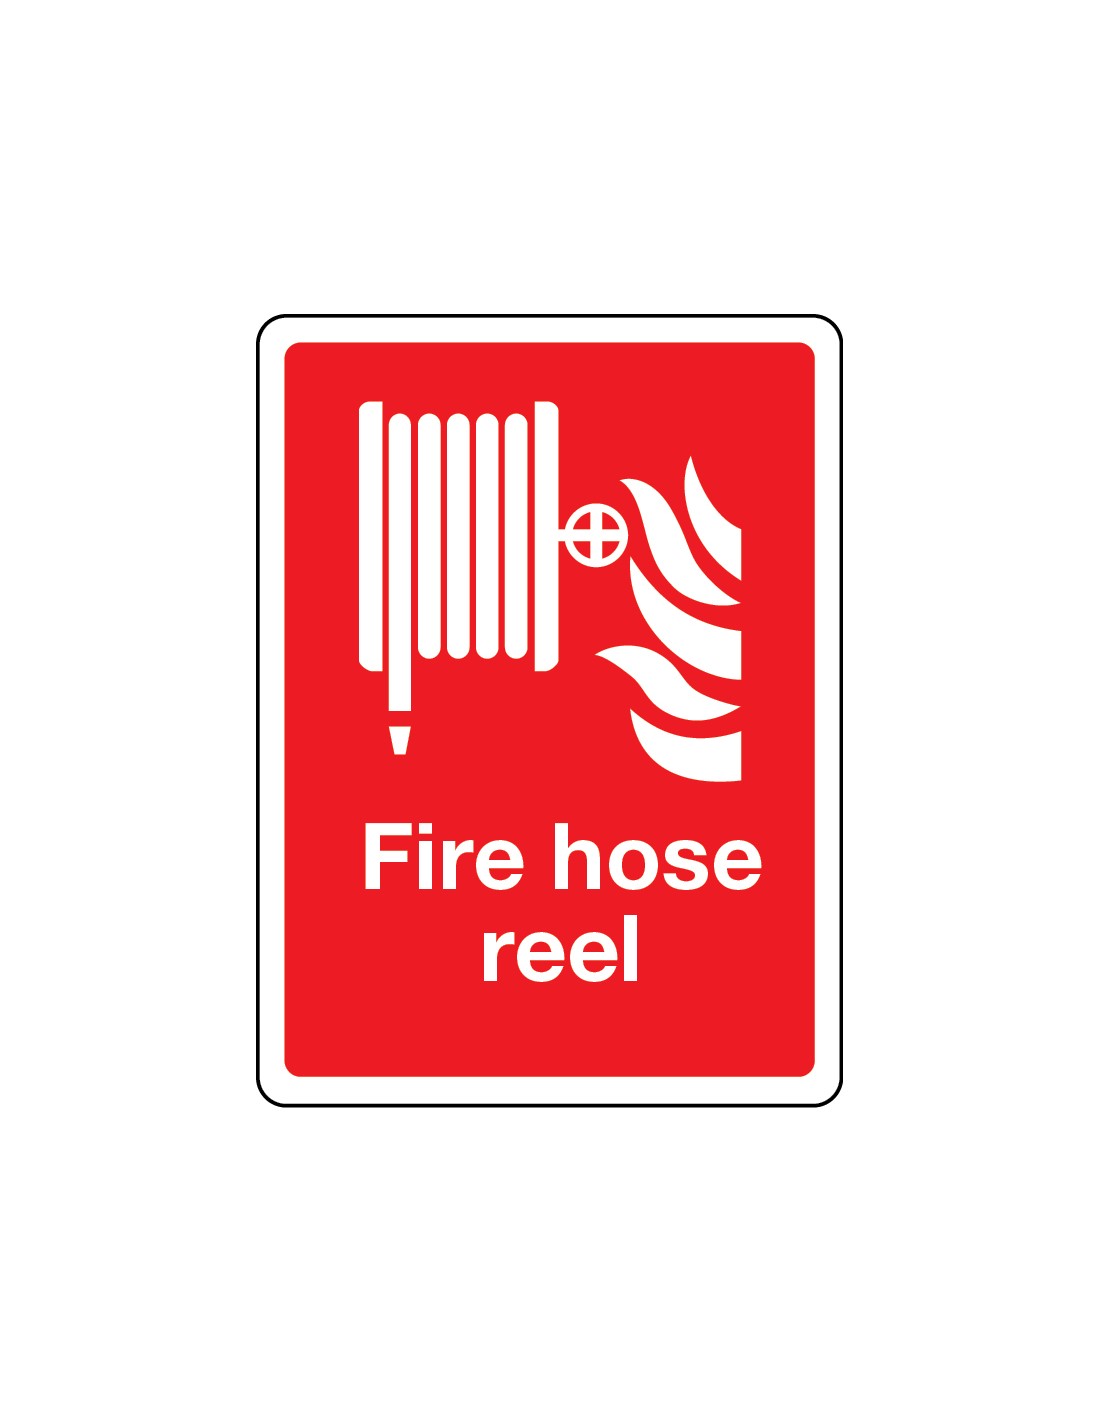 Fire Hose Reel Signage